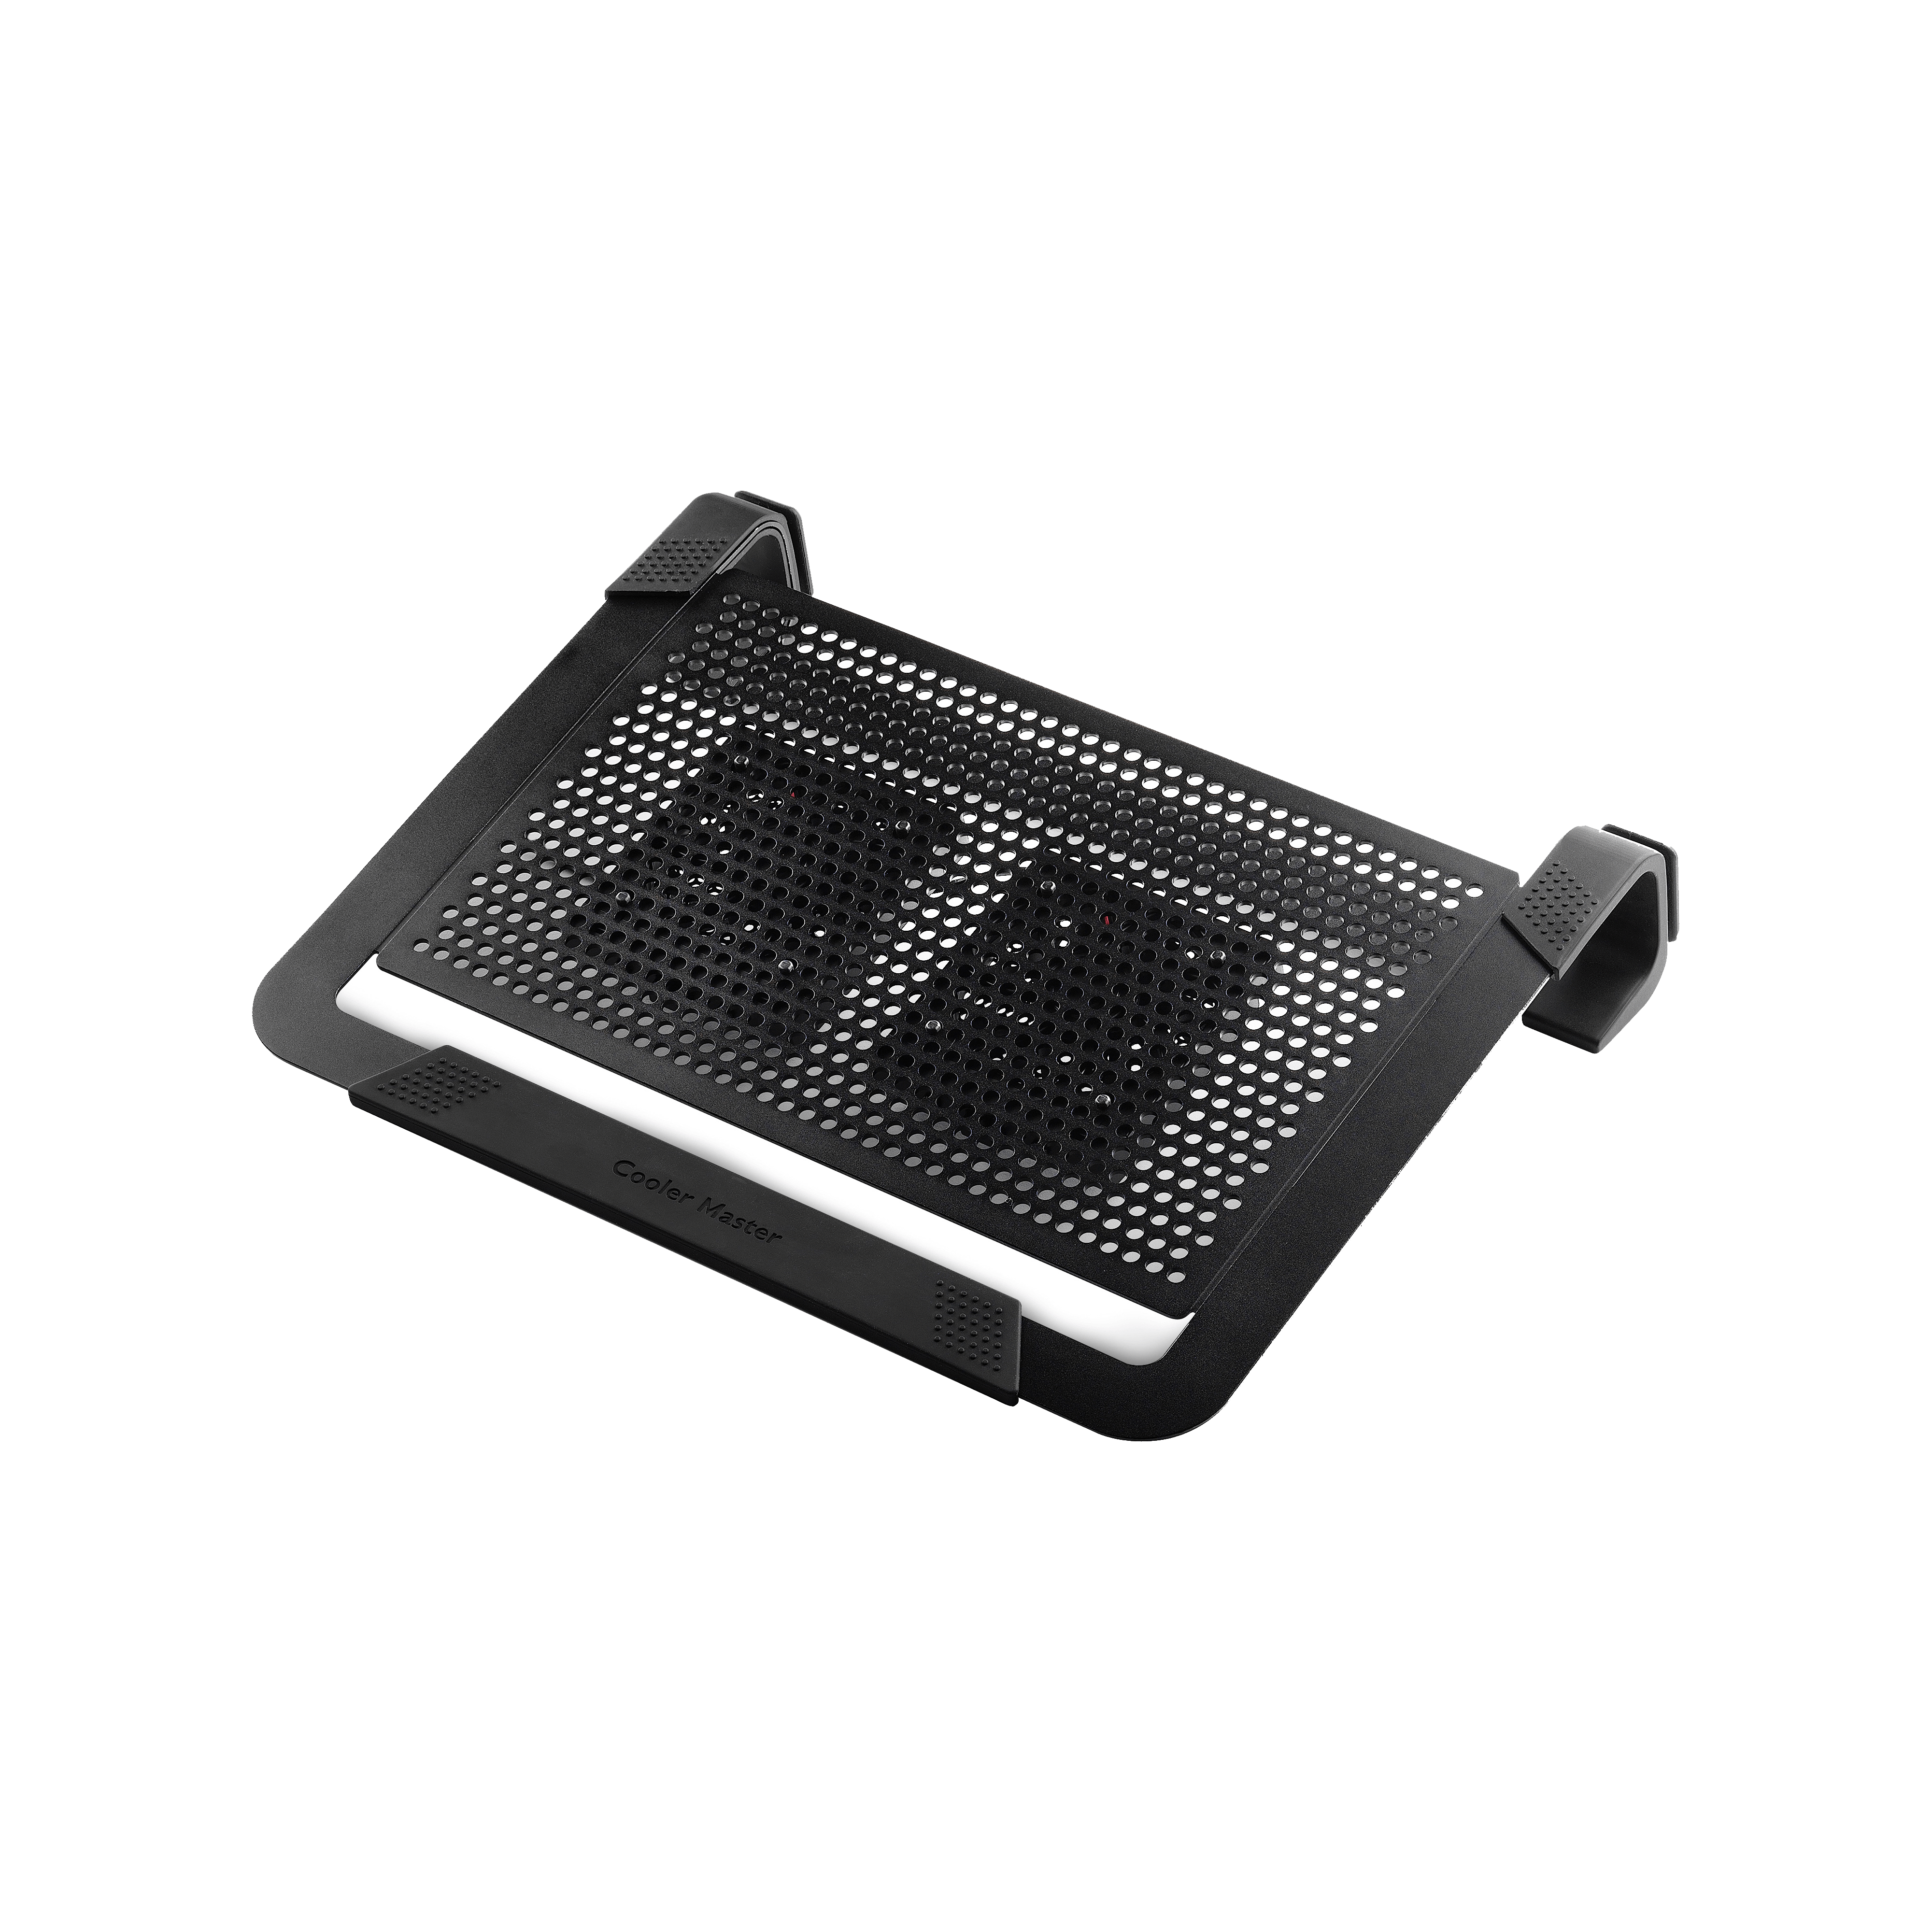 Cooler Master Support ventilé - NotePal U2 Plus (noir